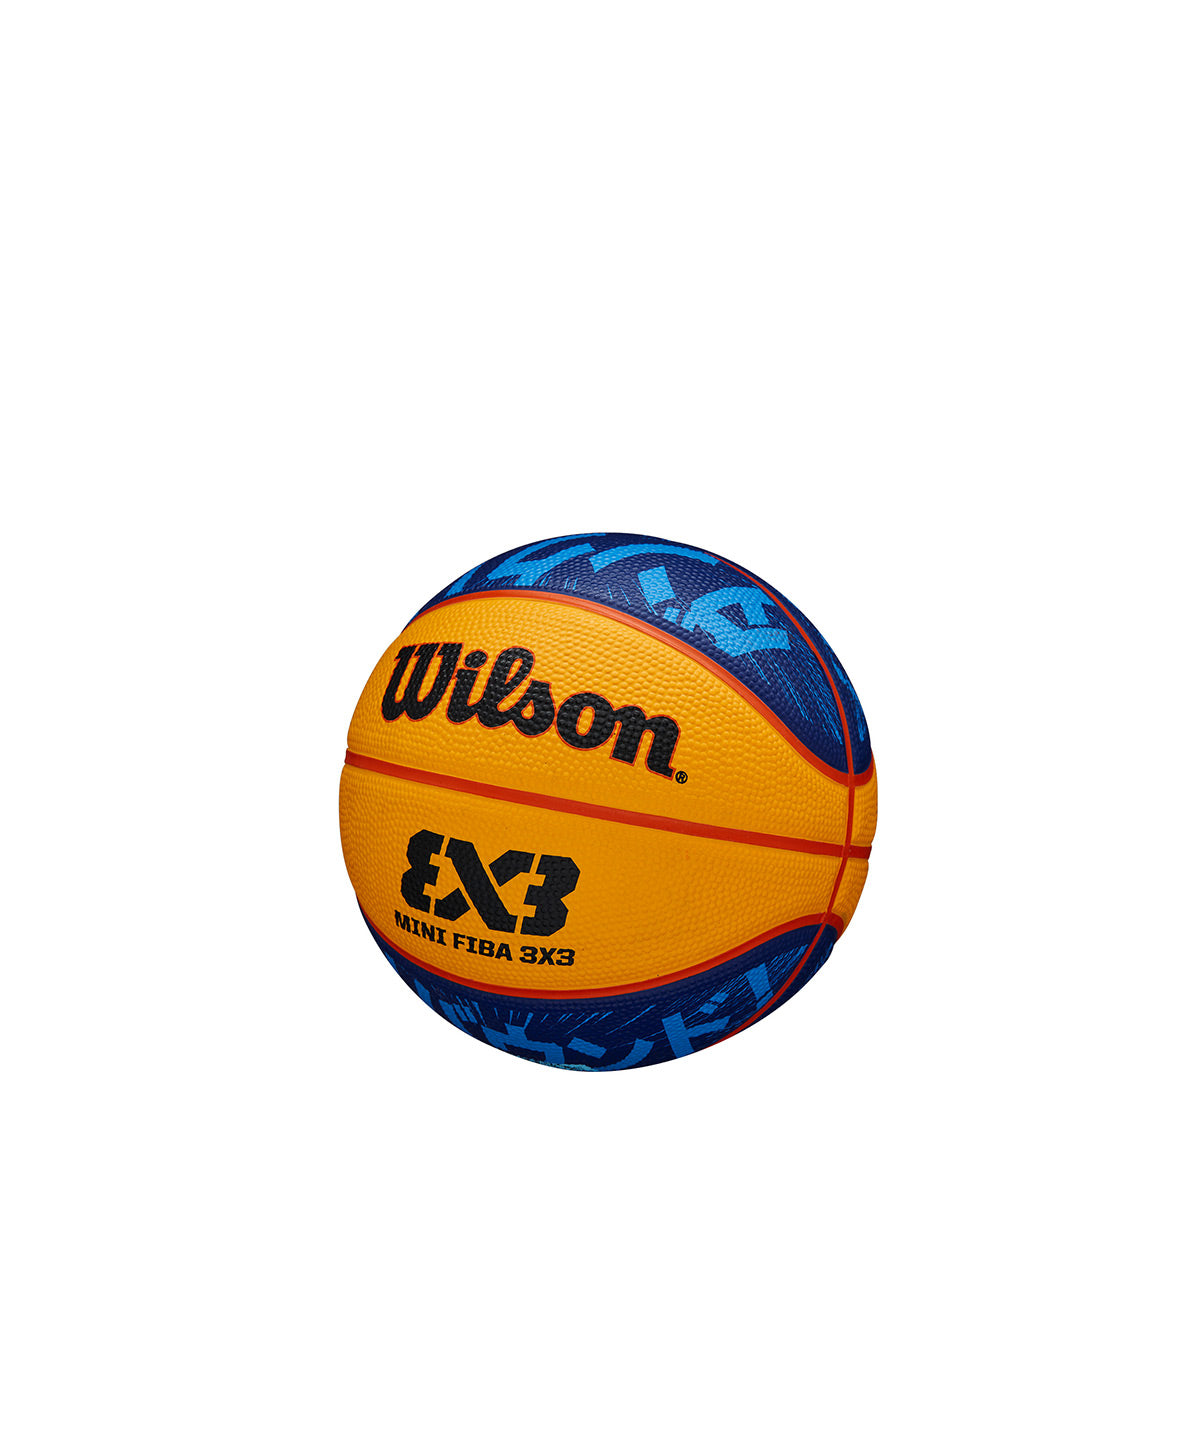 FIBA 3x3 Mini